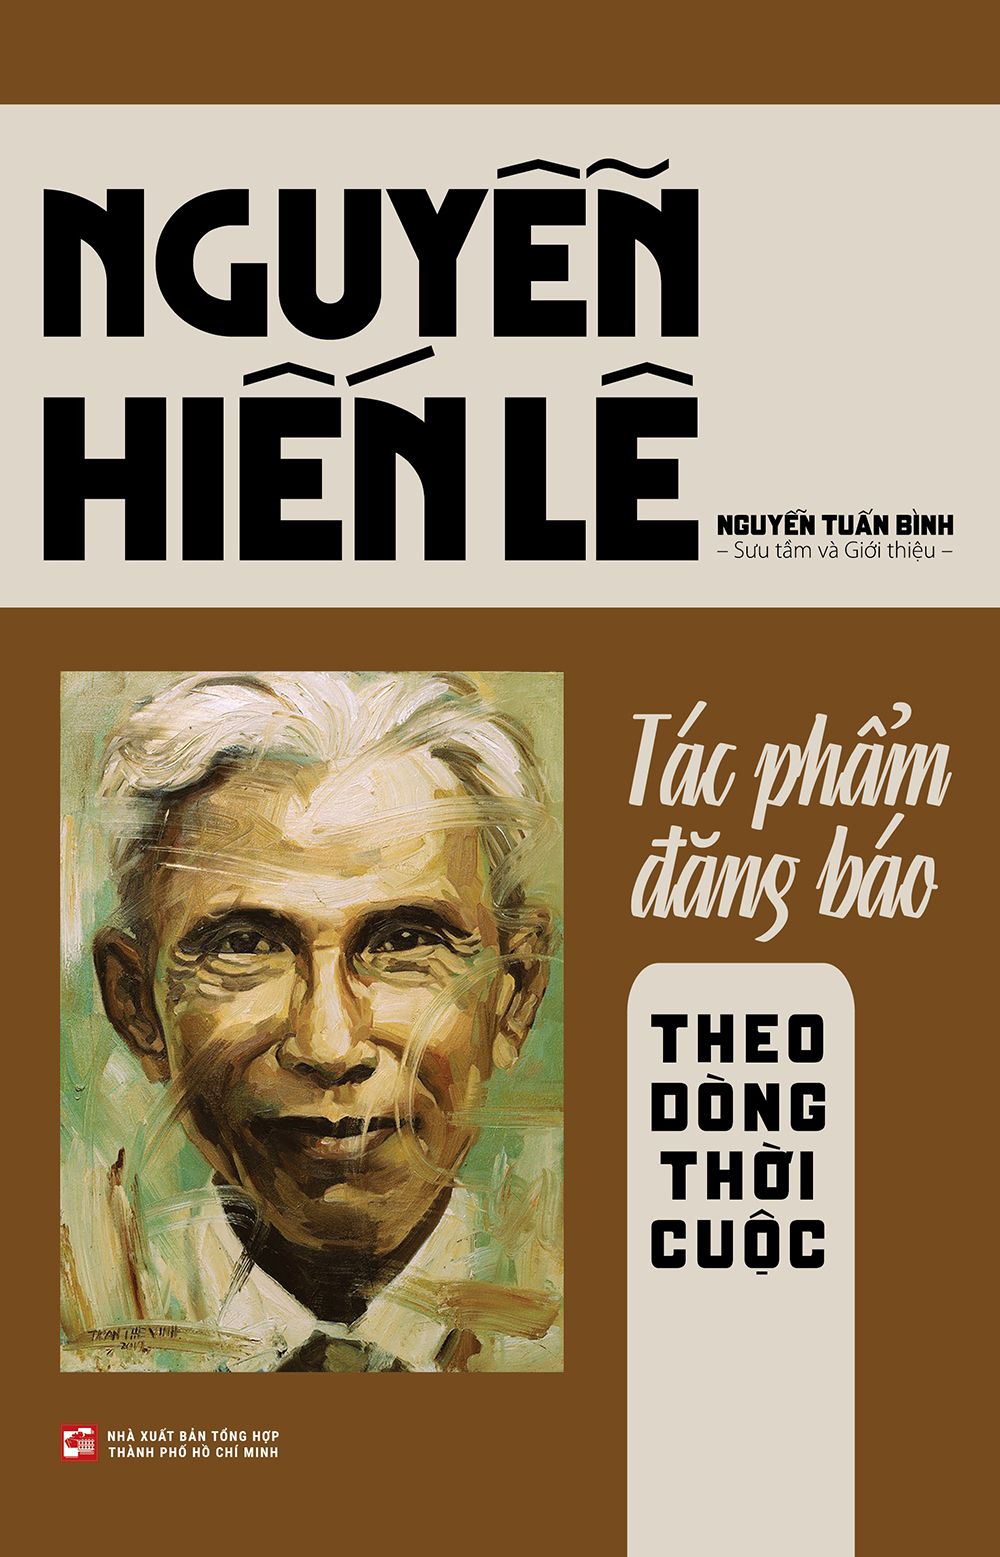 Bìa sách Nguyễn Hiến Lê - Tác phẩm đăng báo - Theo dòng thời cuộc. Ảnh: NXB tổng hợp TPHCM.